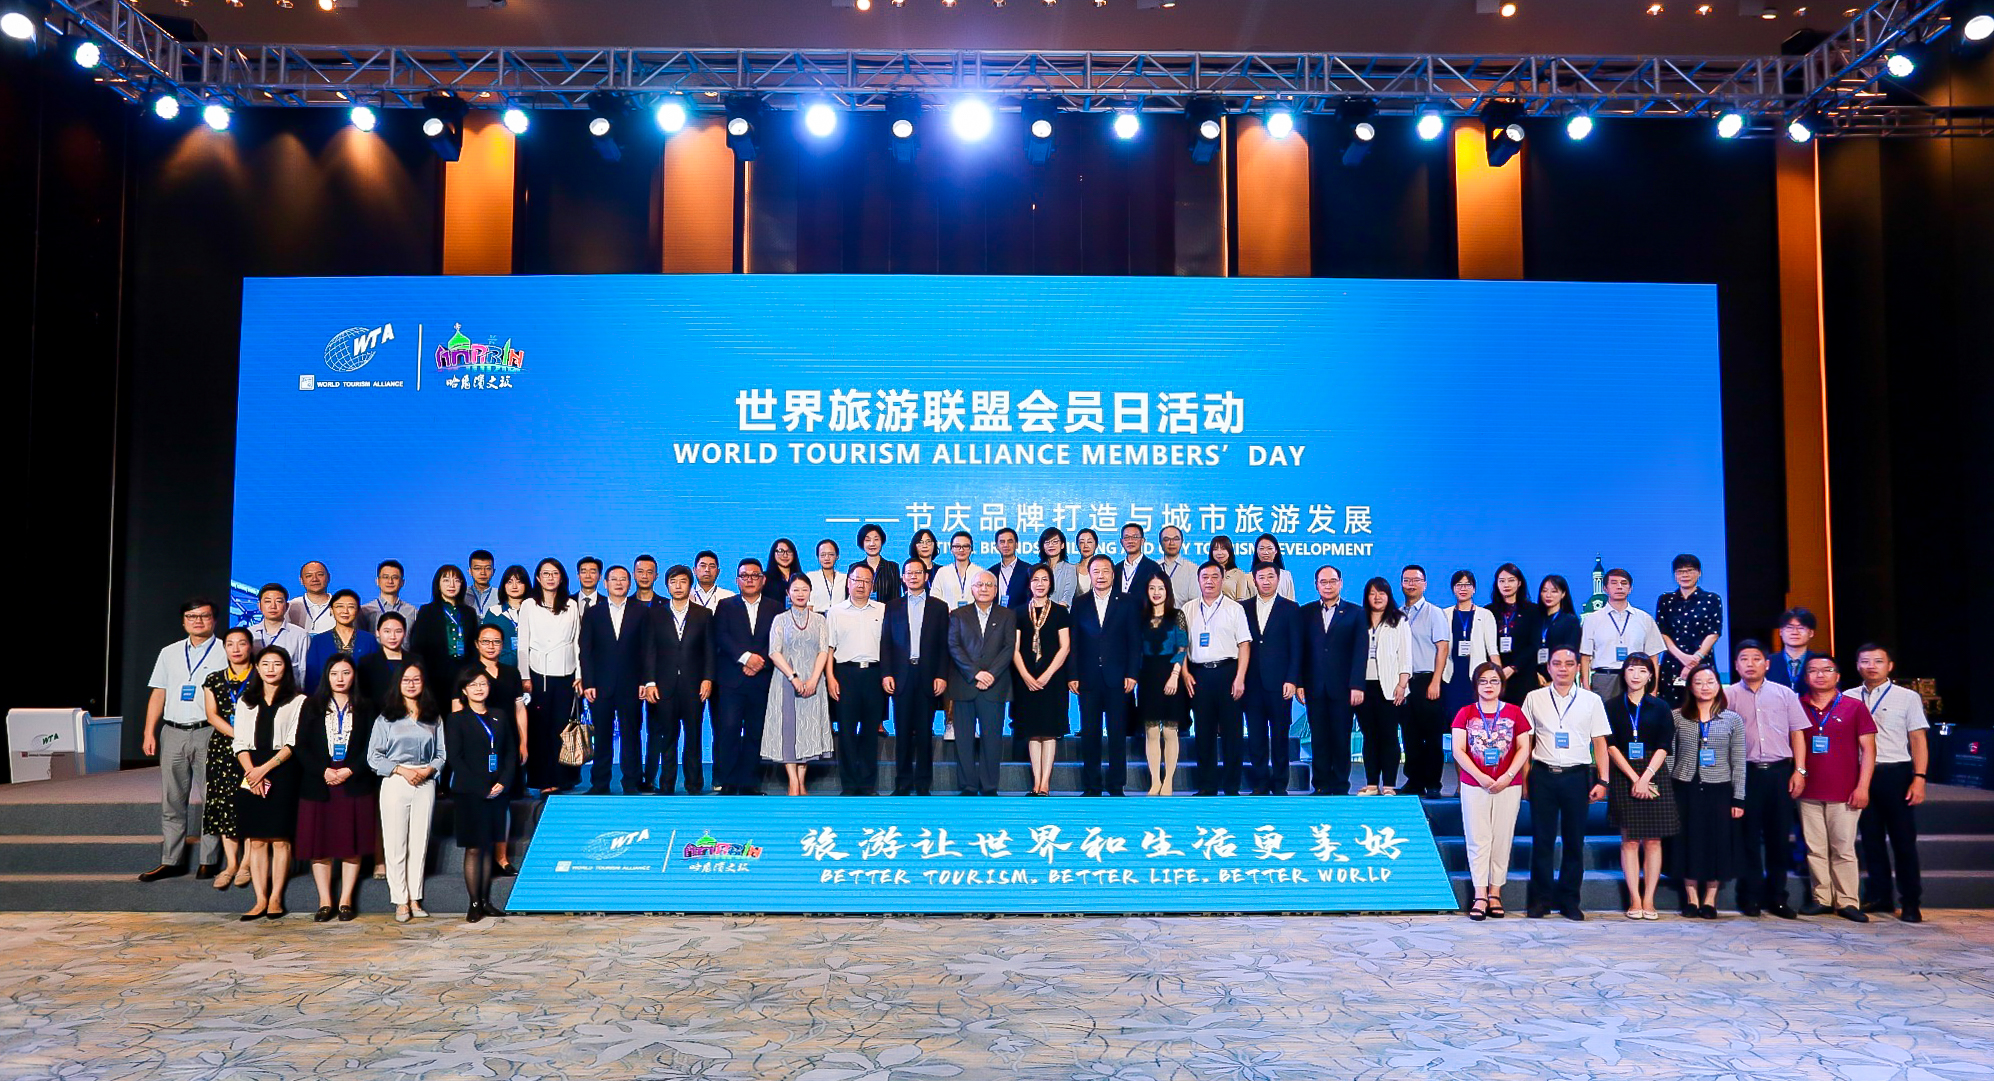 WTA member day issue 1 of 2021, Harbin, China